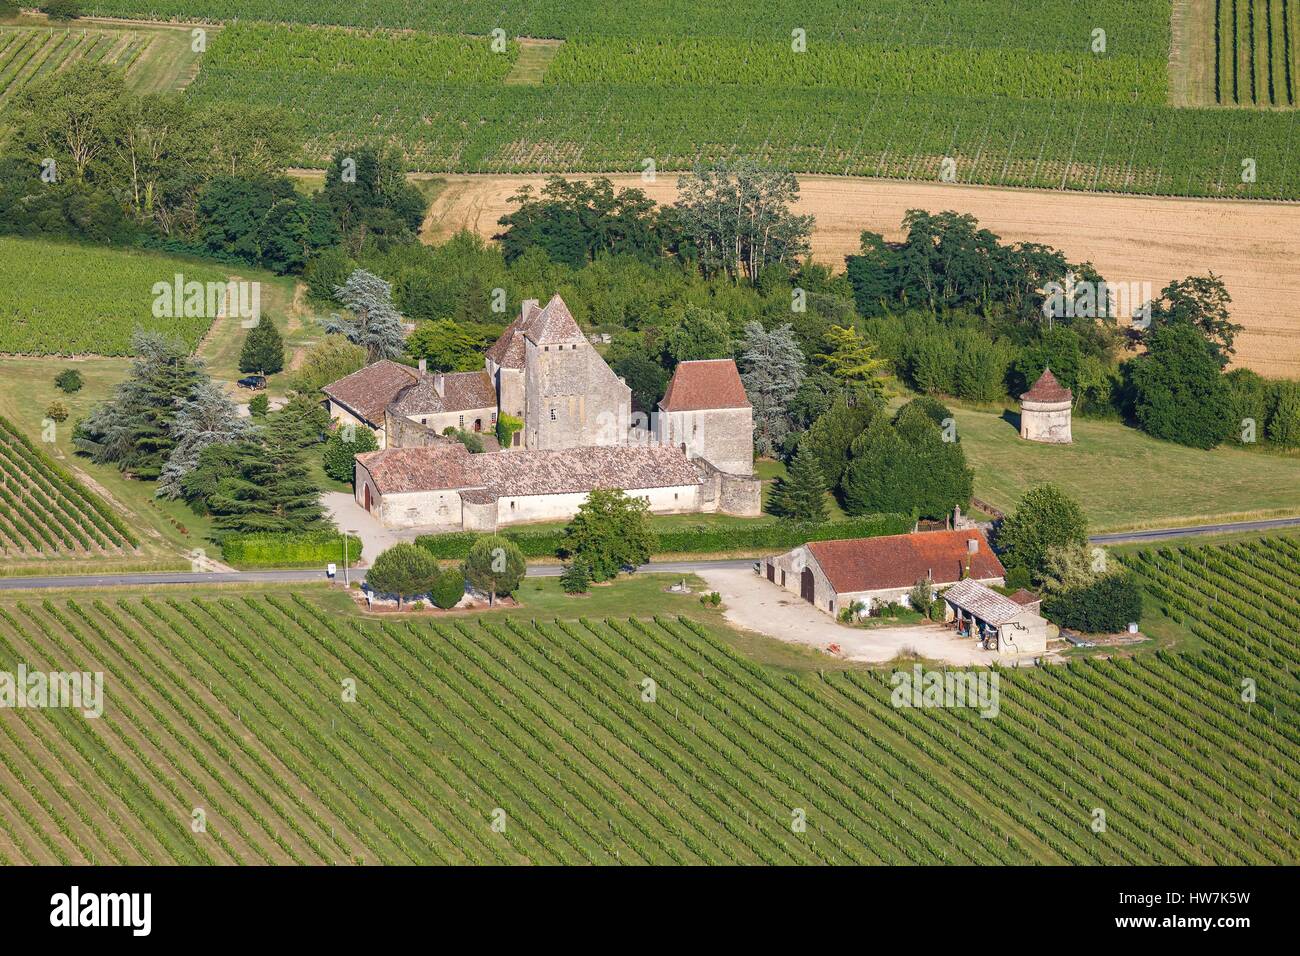 France, Gironde, Loubens, Lavison château entouré de vignobles entre deux mers (vue aérienne) Banque D'Images